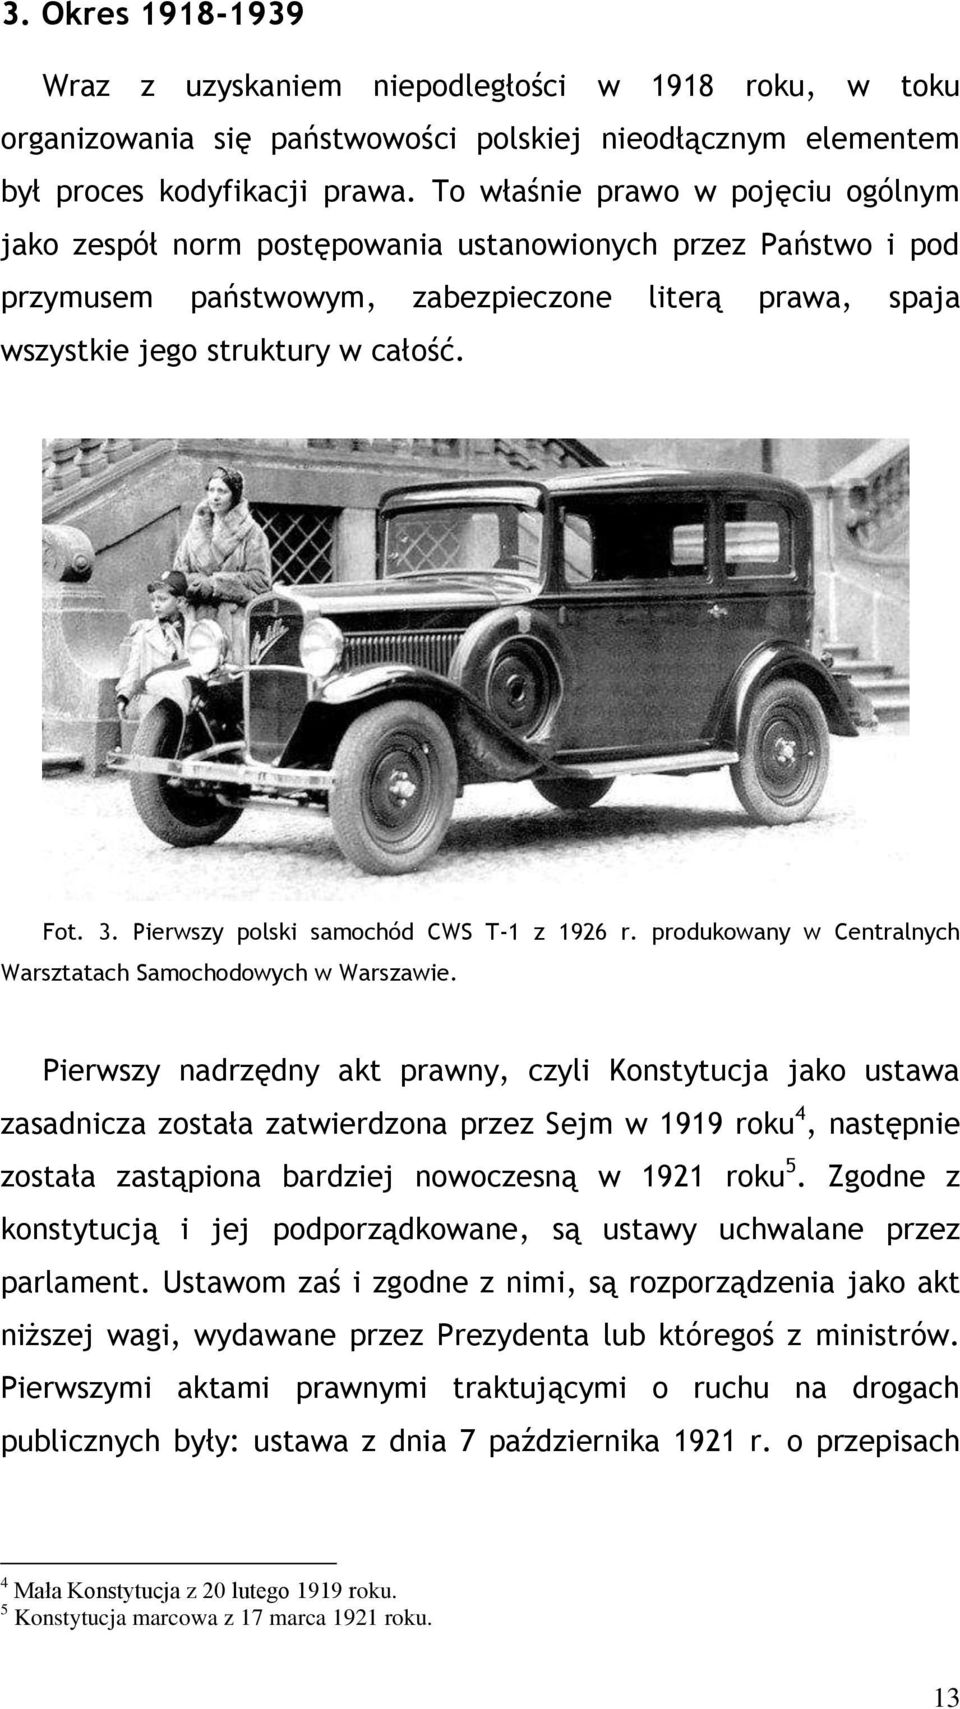 Pierwszy polski samochód CWS T-1 z 1926 r. produkowany w Centralnych Warsztatach Samochodowych w Warszawie.